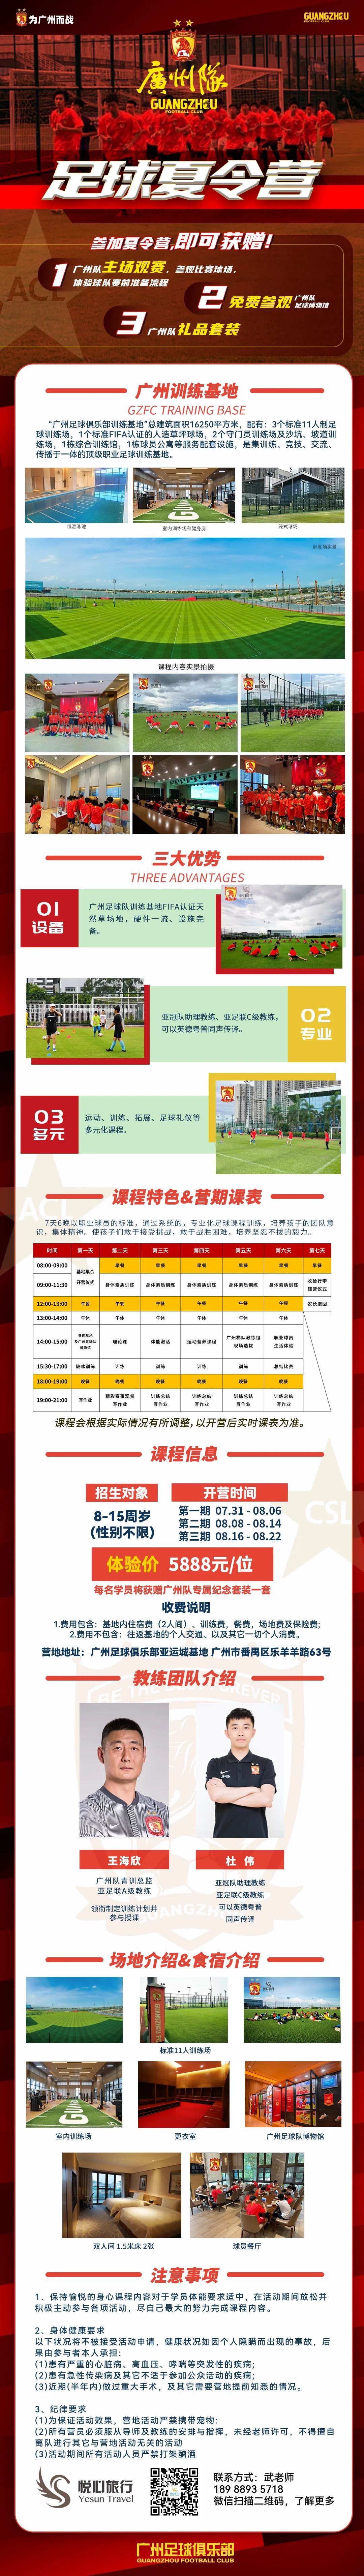 5888！广州队组织青少年足球夏令营：体验价5888元